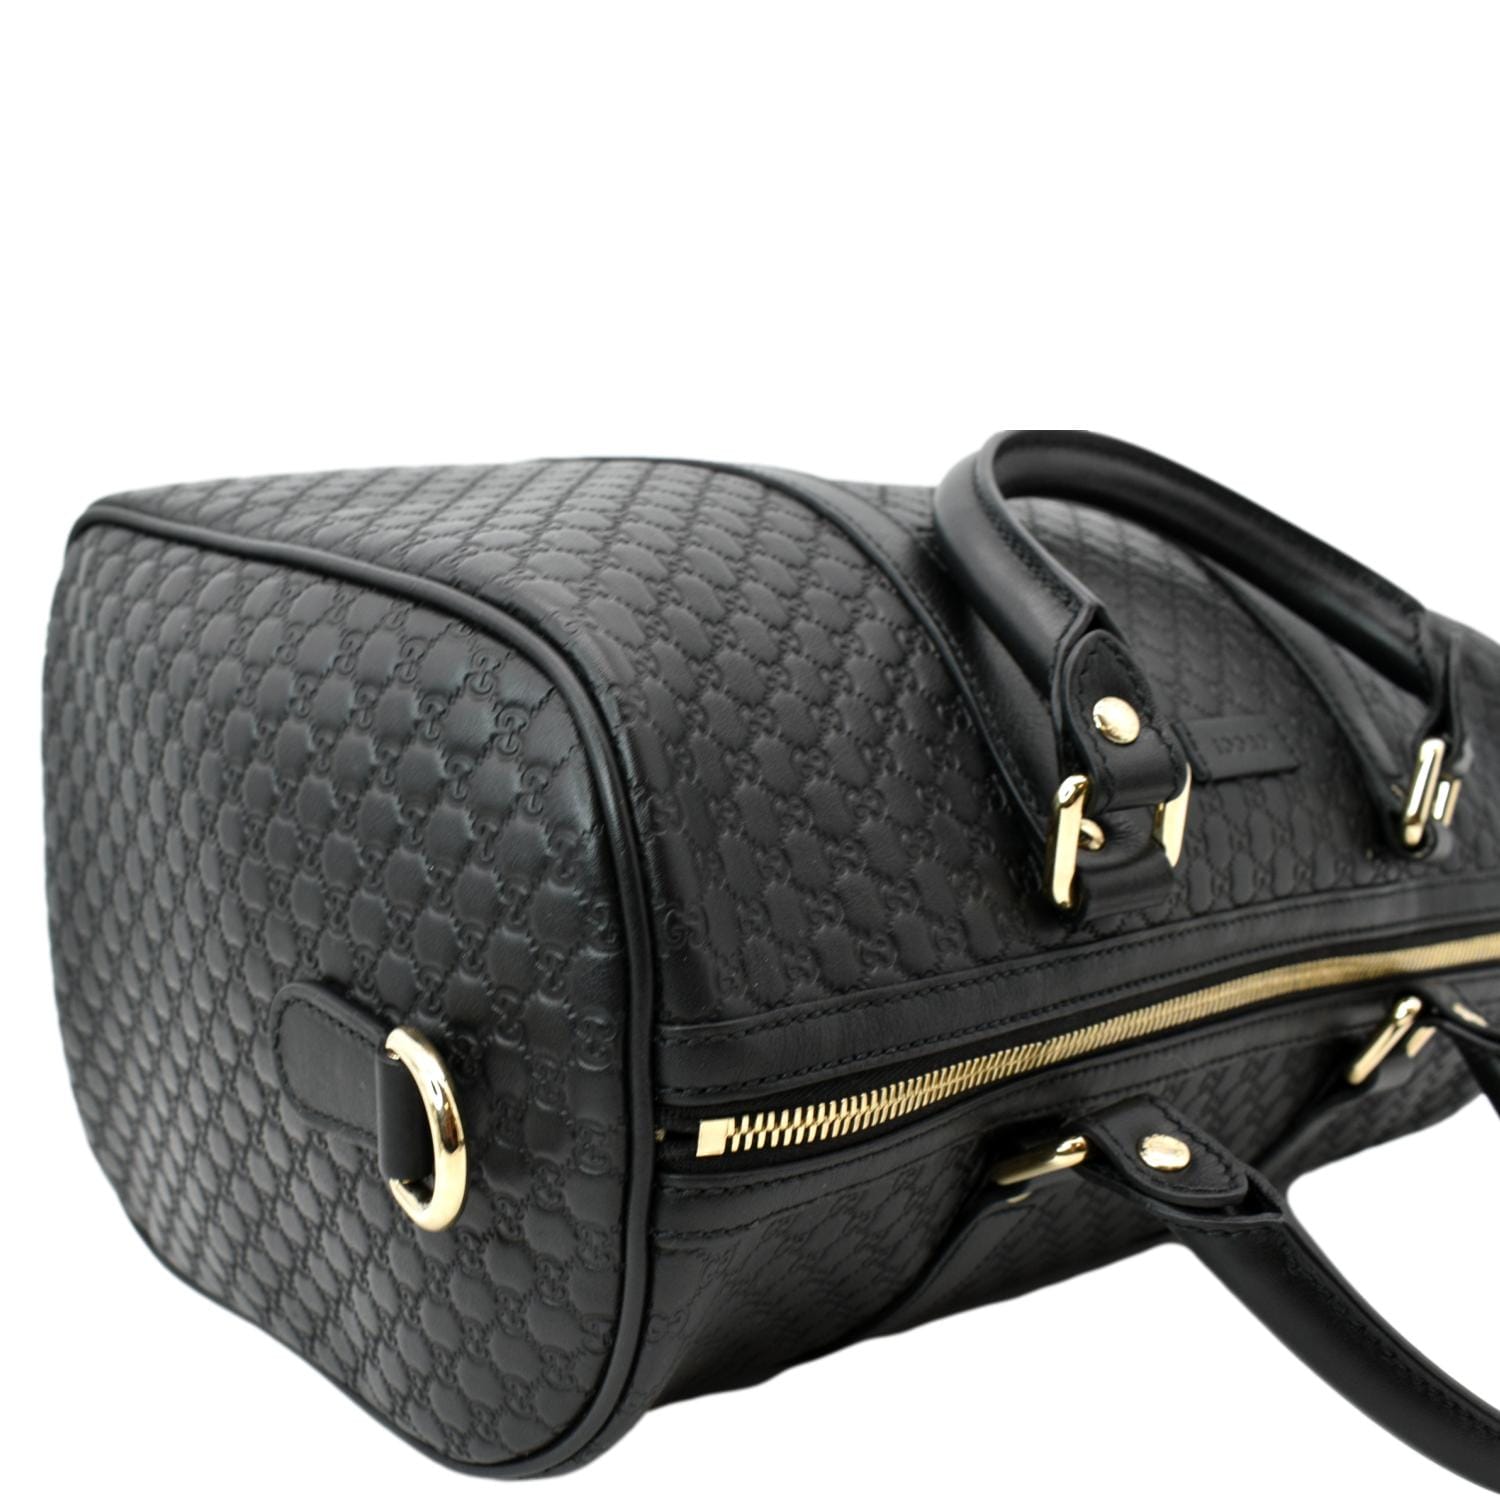 GUCCI Microguccissima Leather Boston Bag Black for Sale in Miami